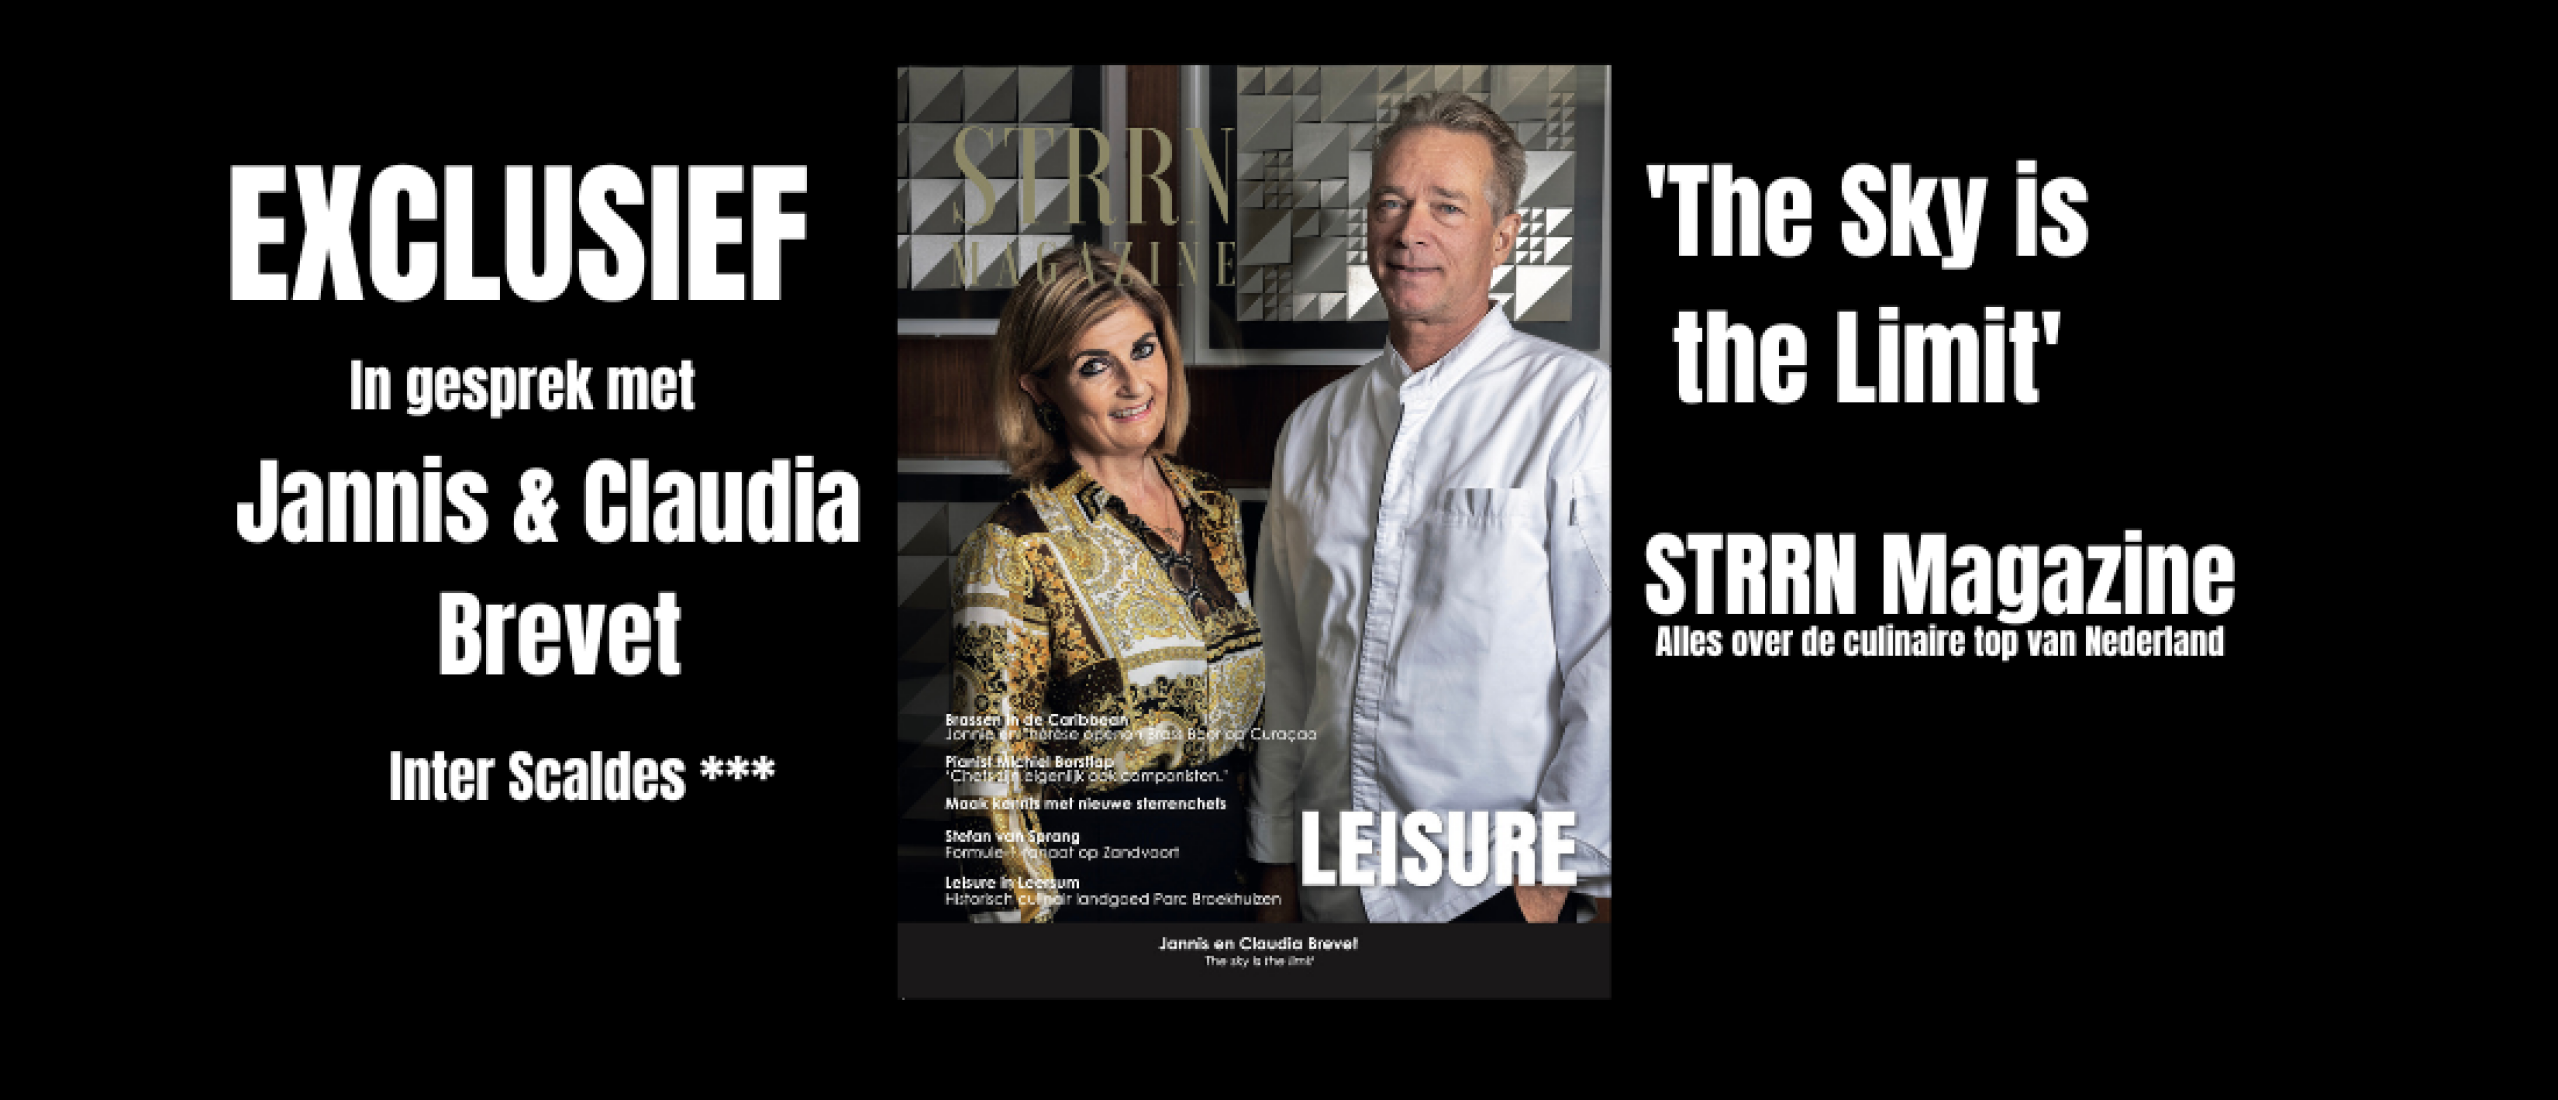 STRRN Magazine met Jannis & Claudia Brevet, Inter Scaldes***